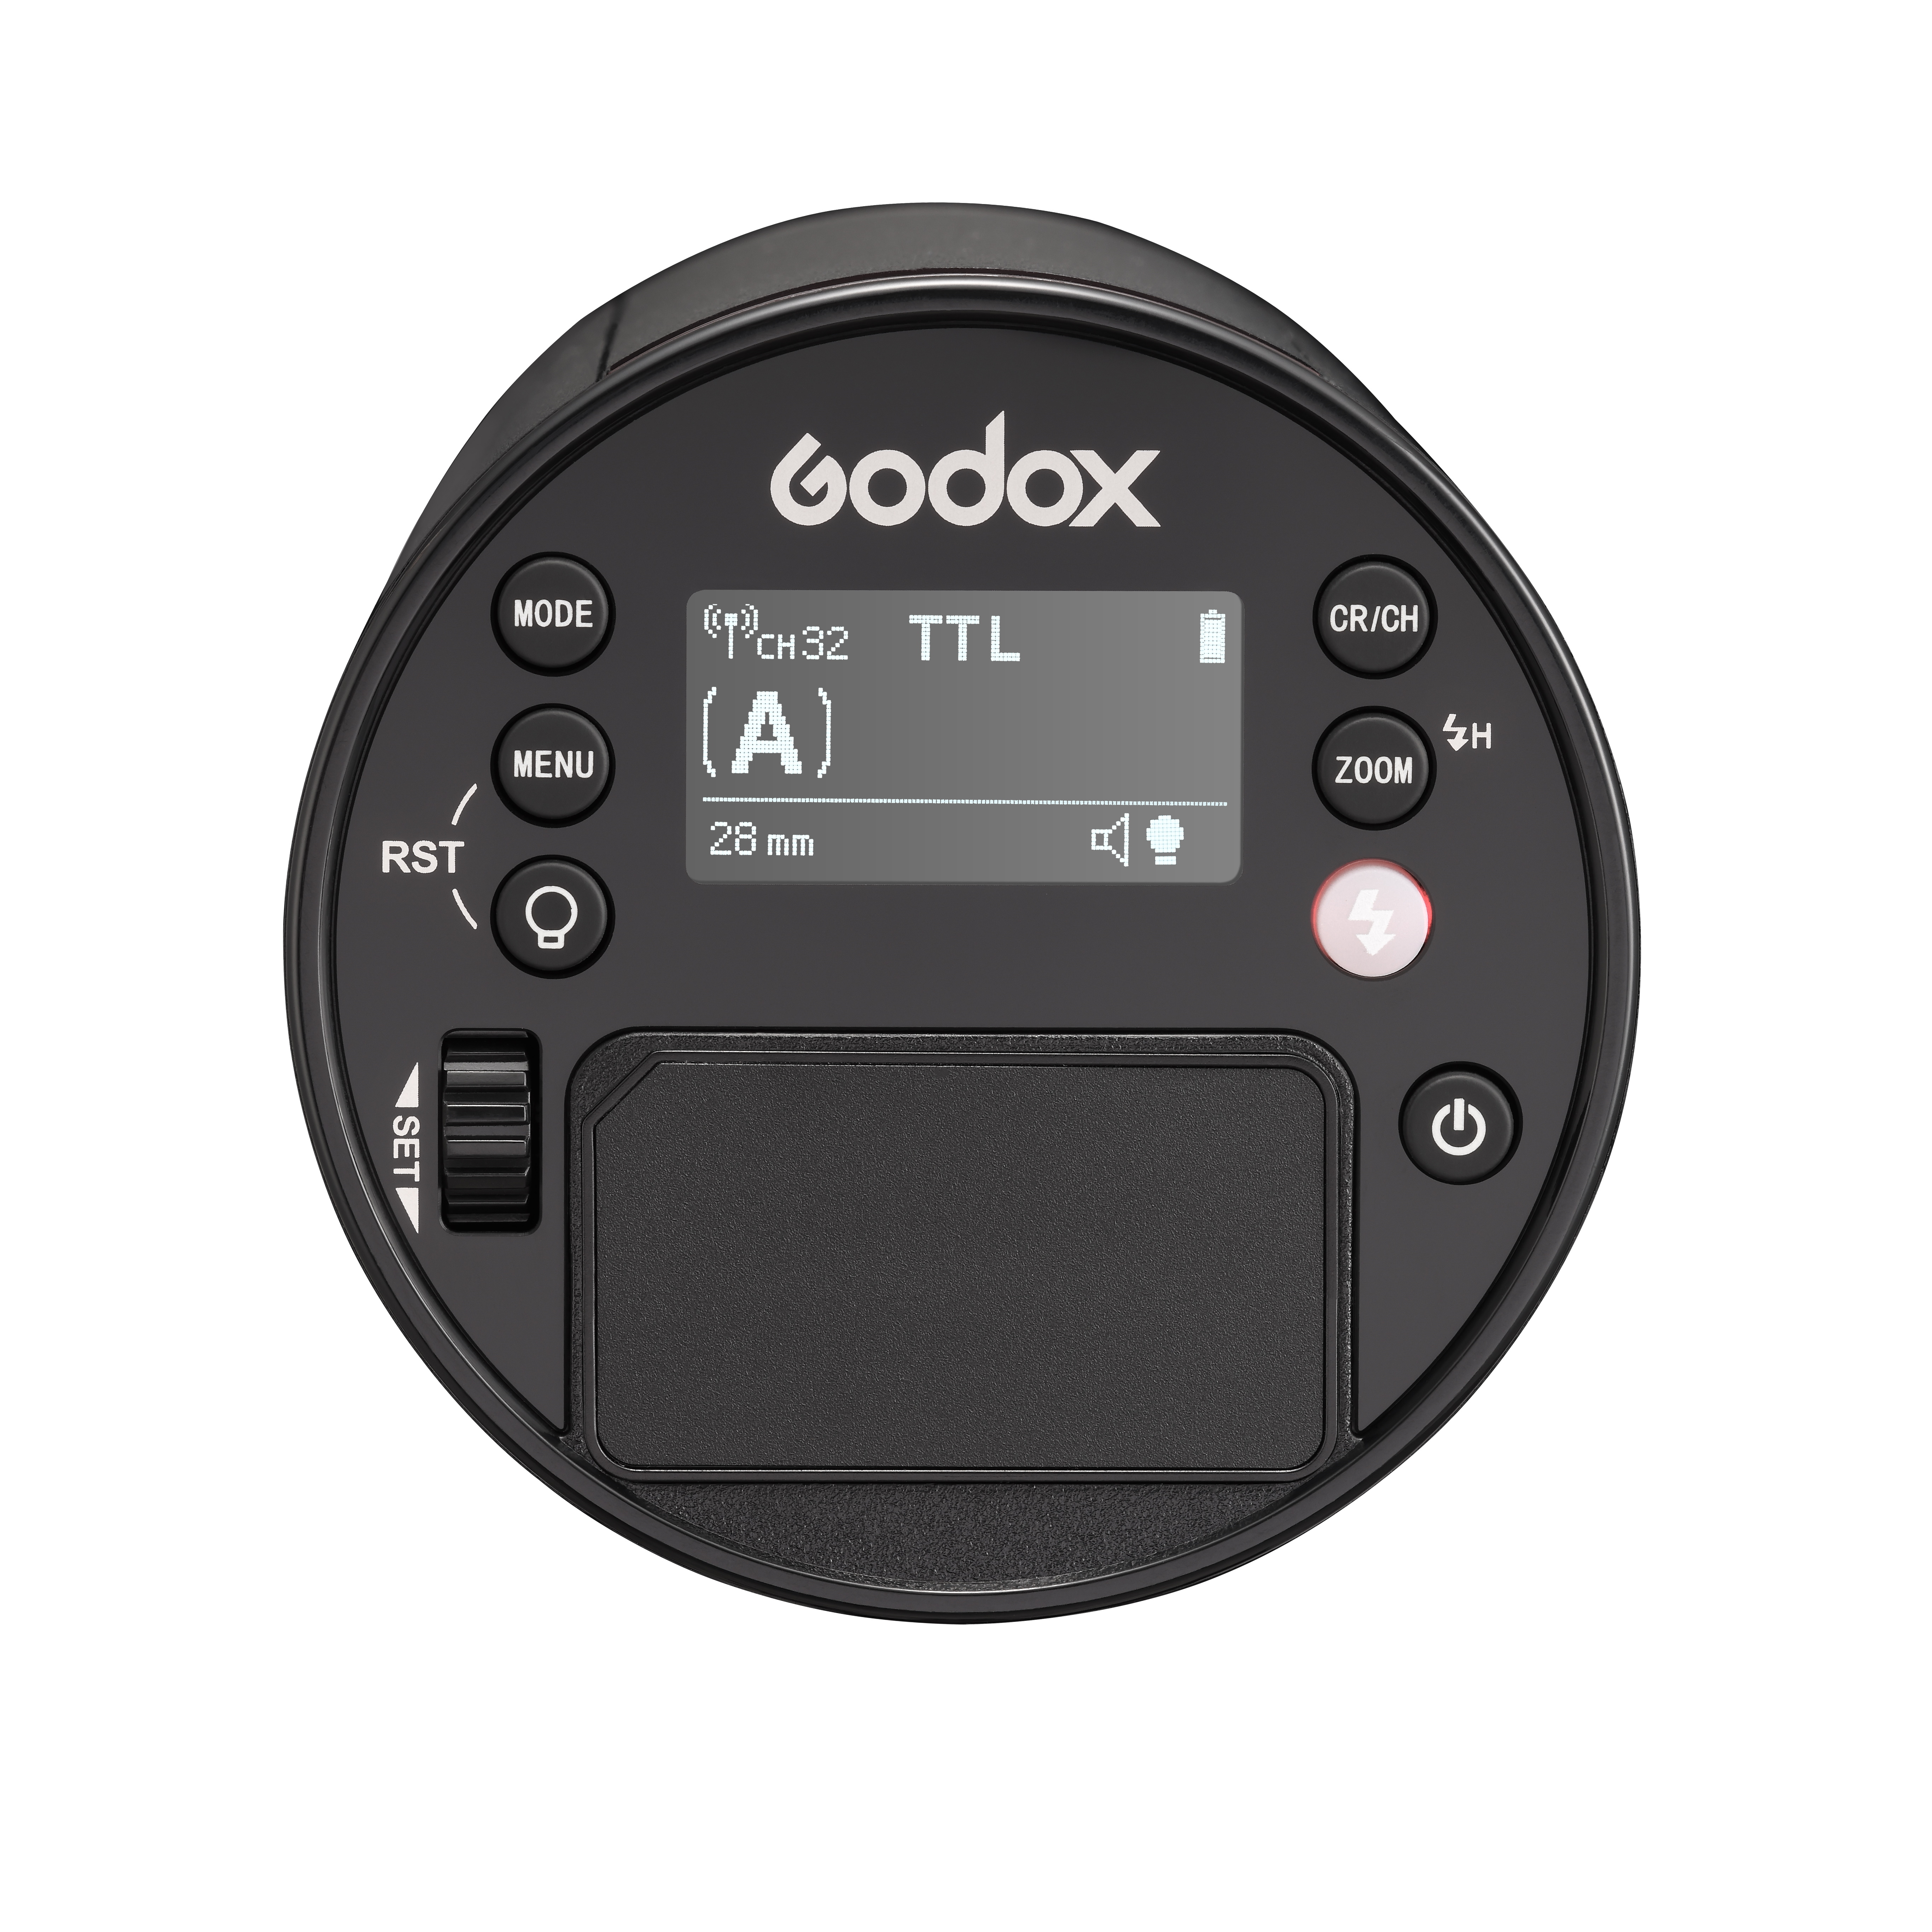 Godox Witstro AD100Pro Вспышка аккумуляторная с поддержкой TTL  от магазина фотооборудования Фотошанс